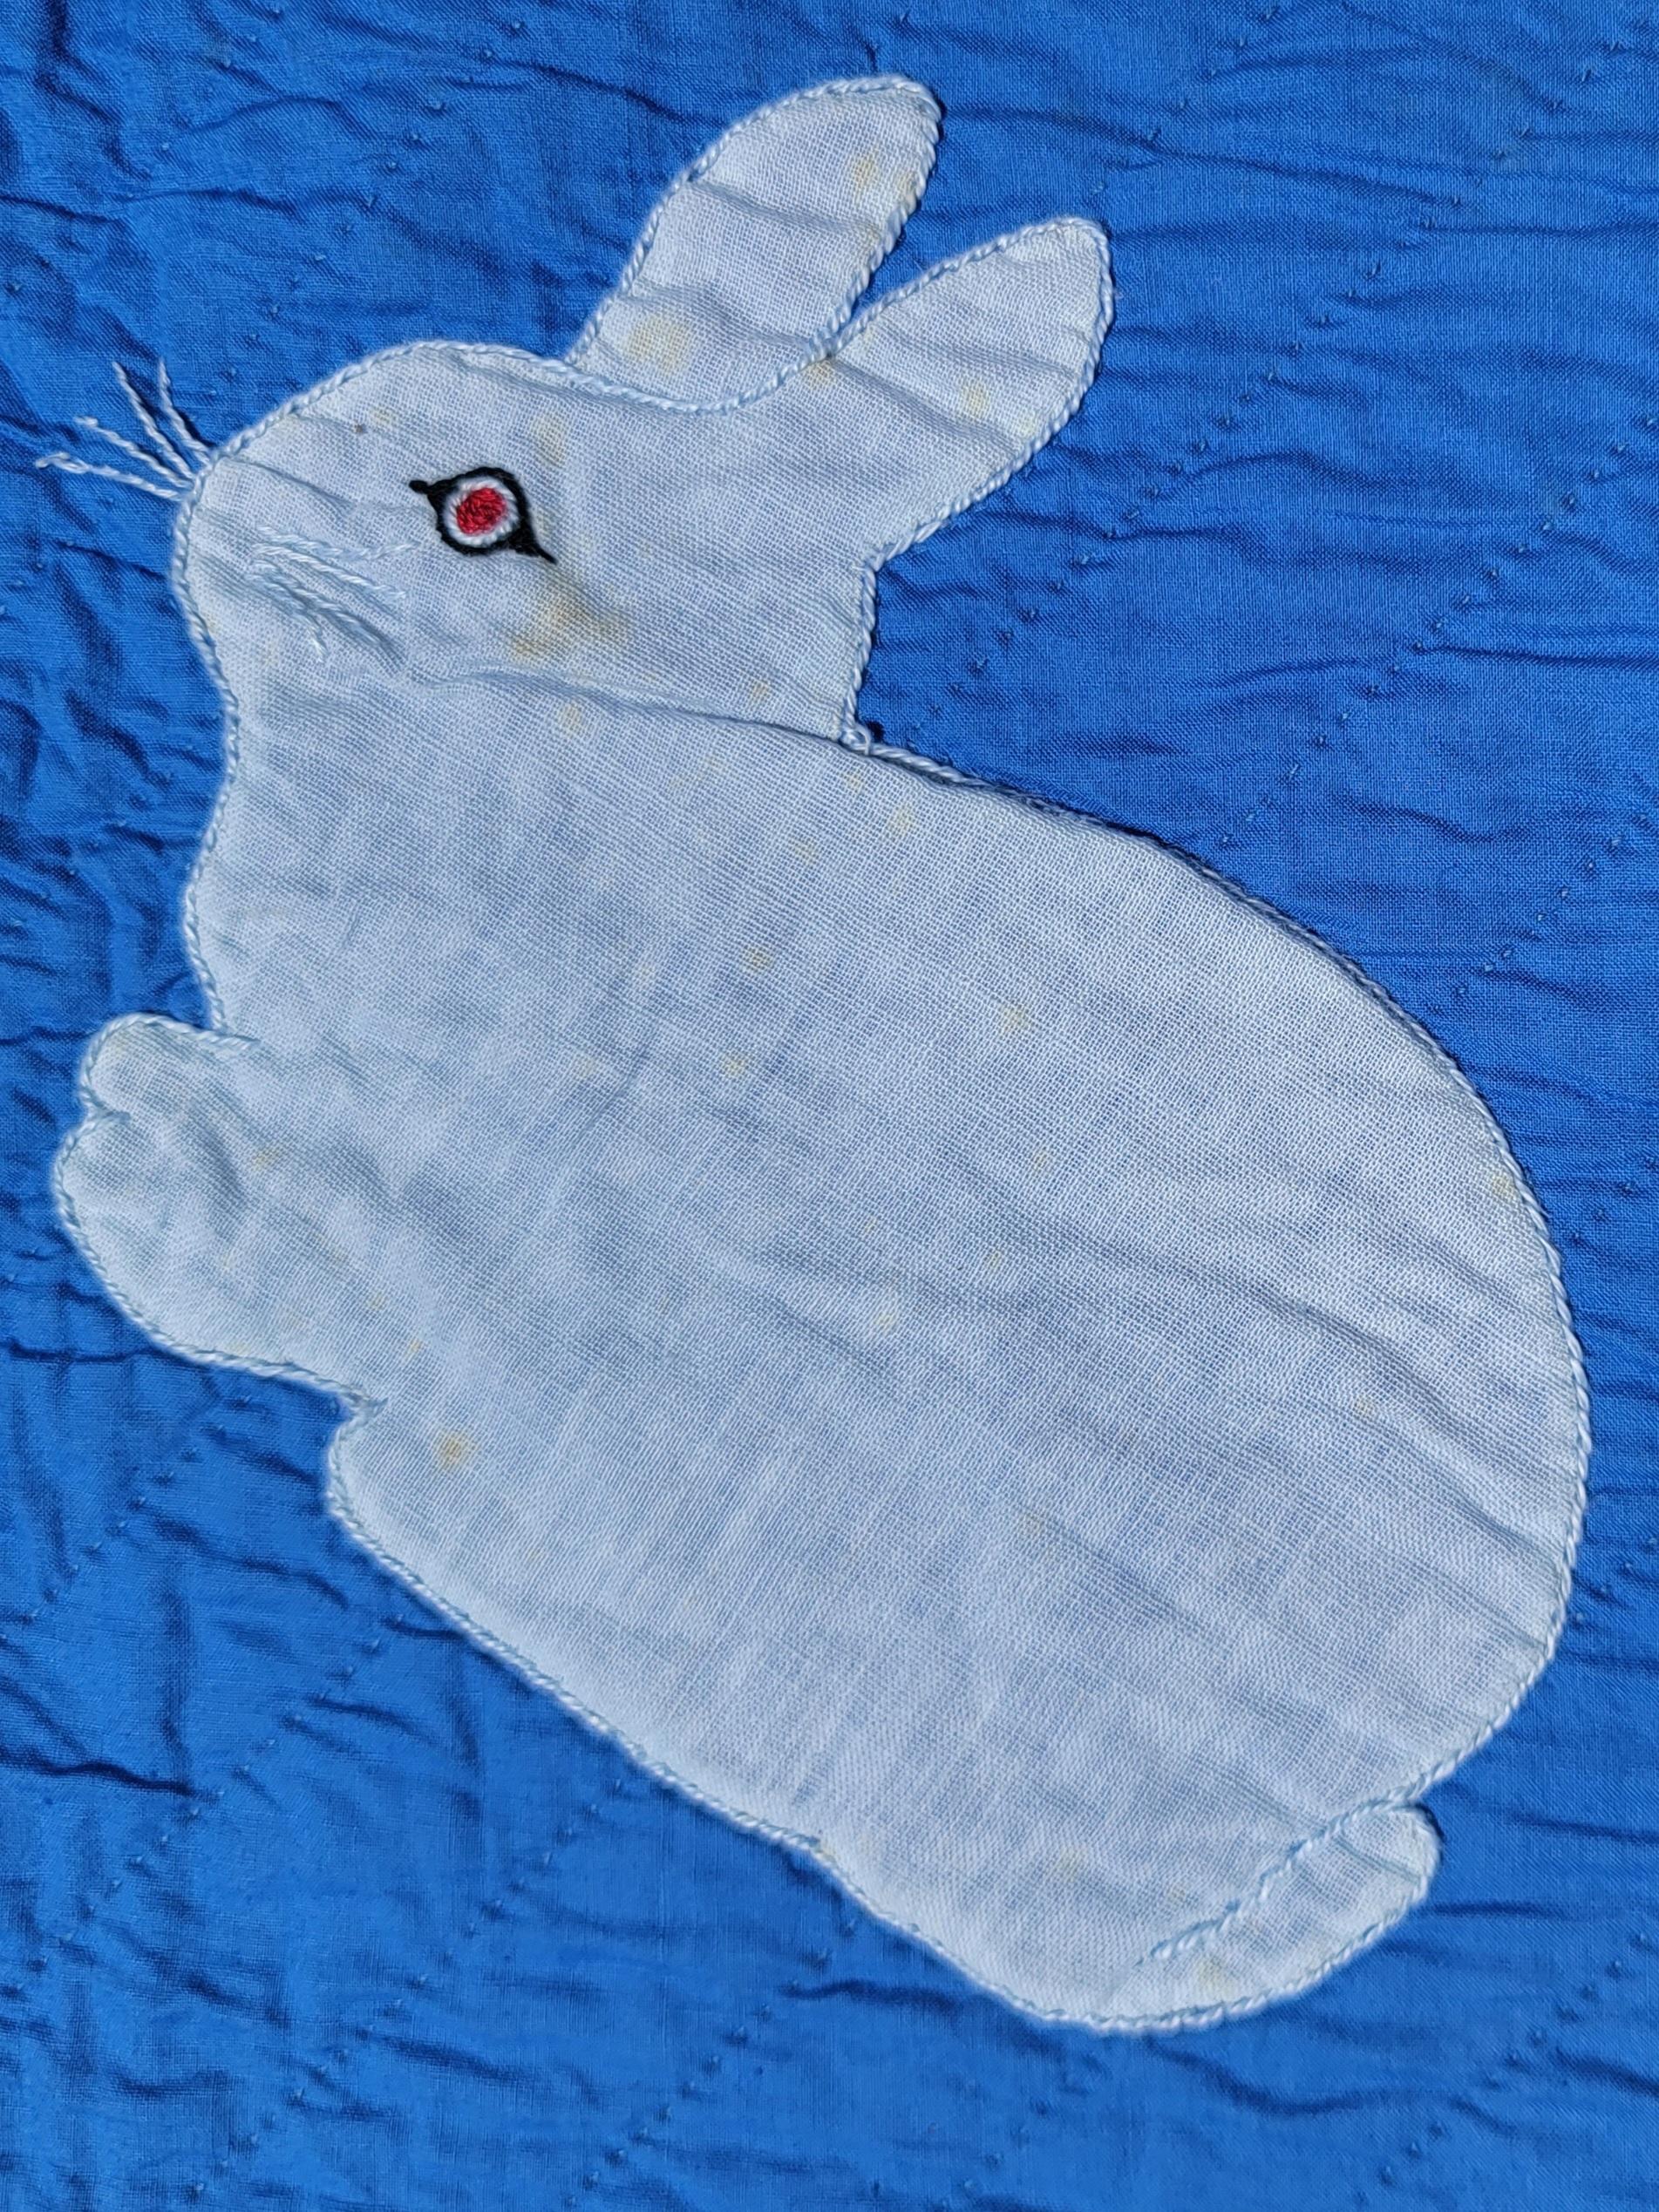 American Rabbit Applique Quilt